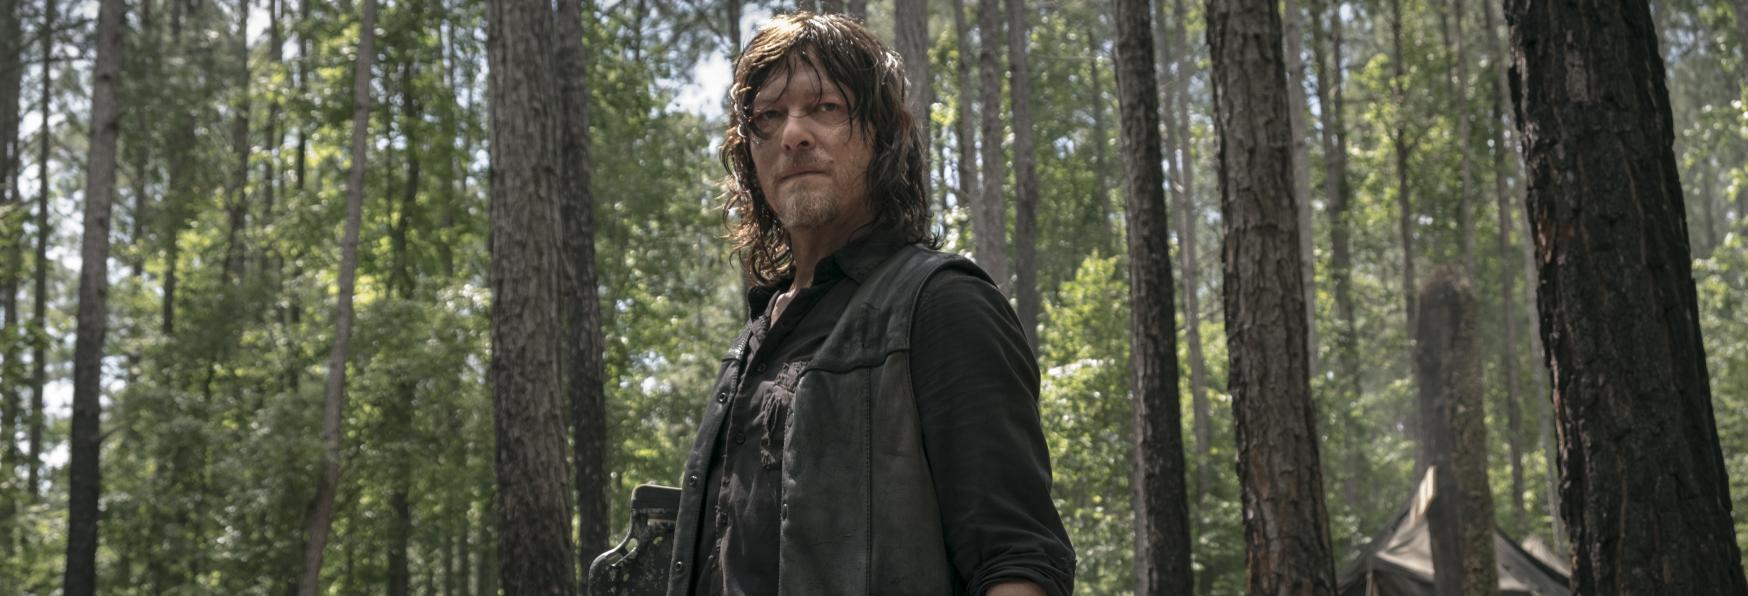 The Walking Dead: Iniziate le Riprese dello Spin-off su Daryl Dixon